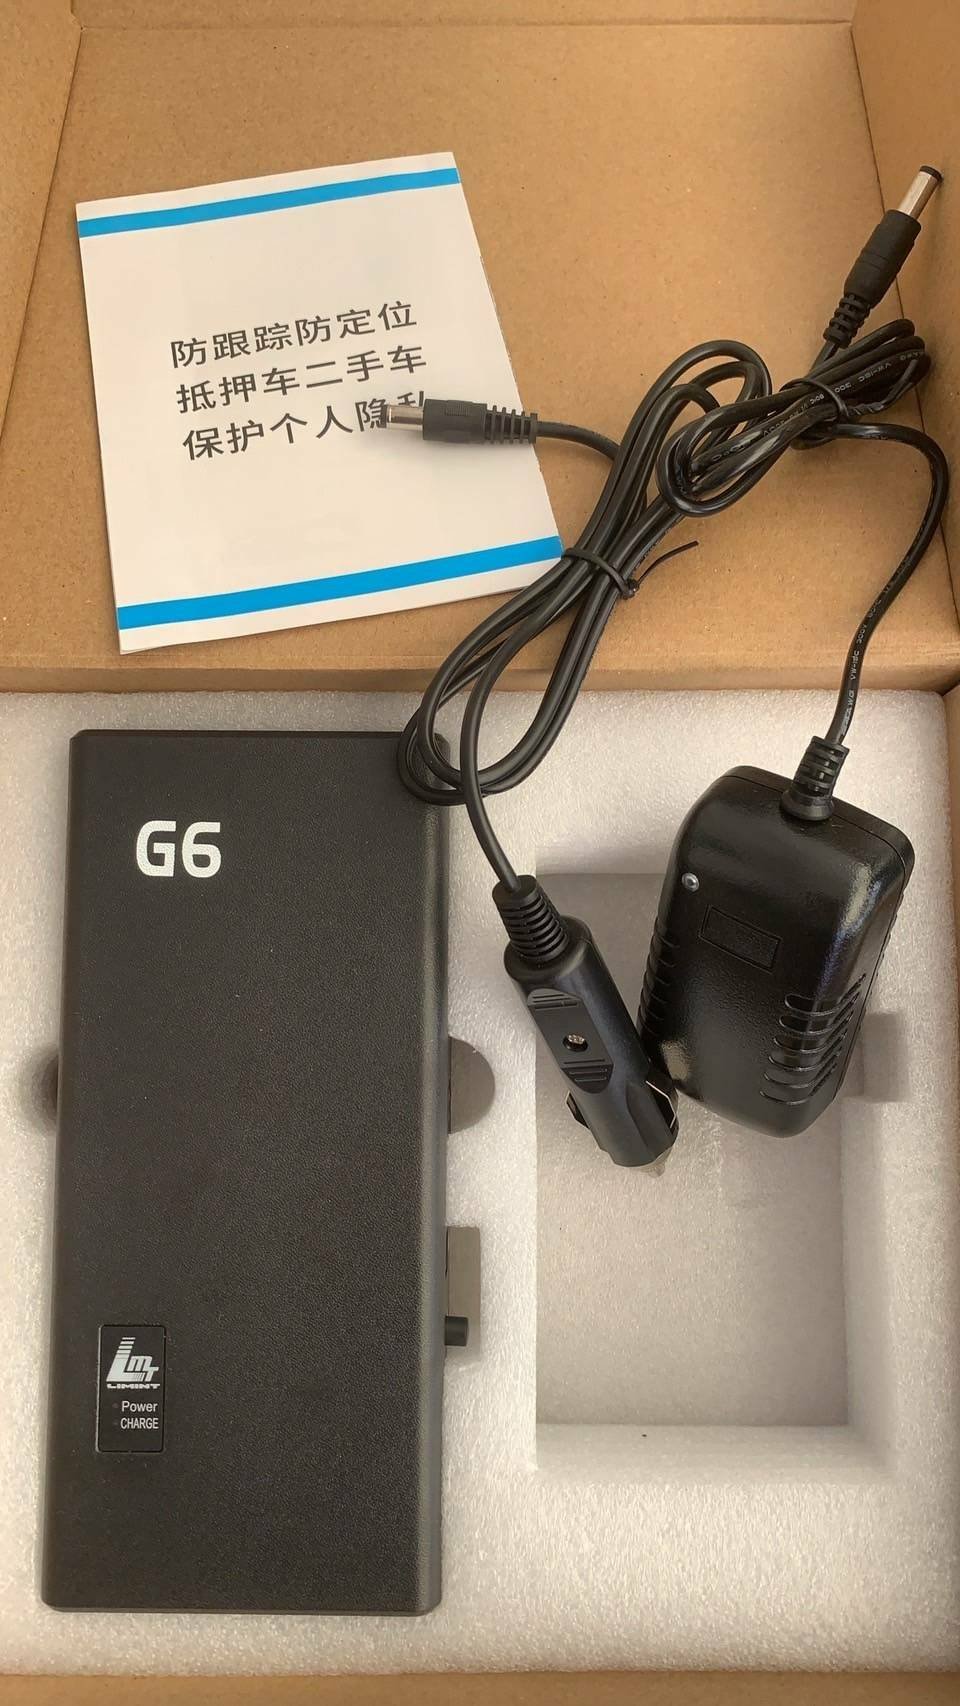 เครื่องตัดสัญญาณ GPS รุ่น G6 ตัดชิมดักฟังเสียง ตัดสัญญาณโทรศัพท์ 4G 5G